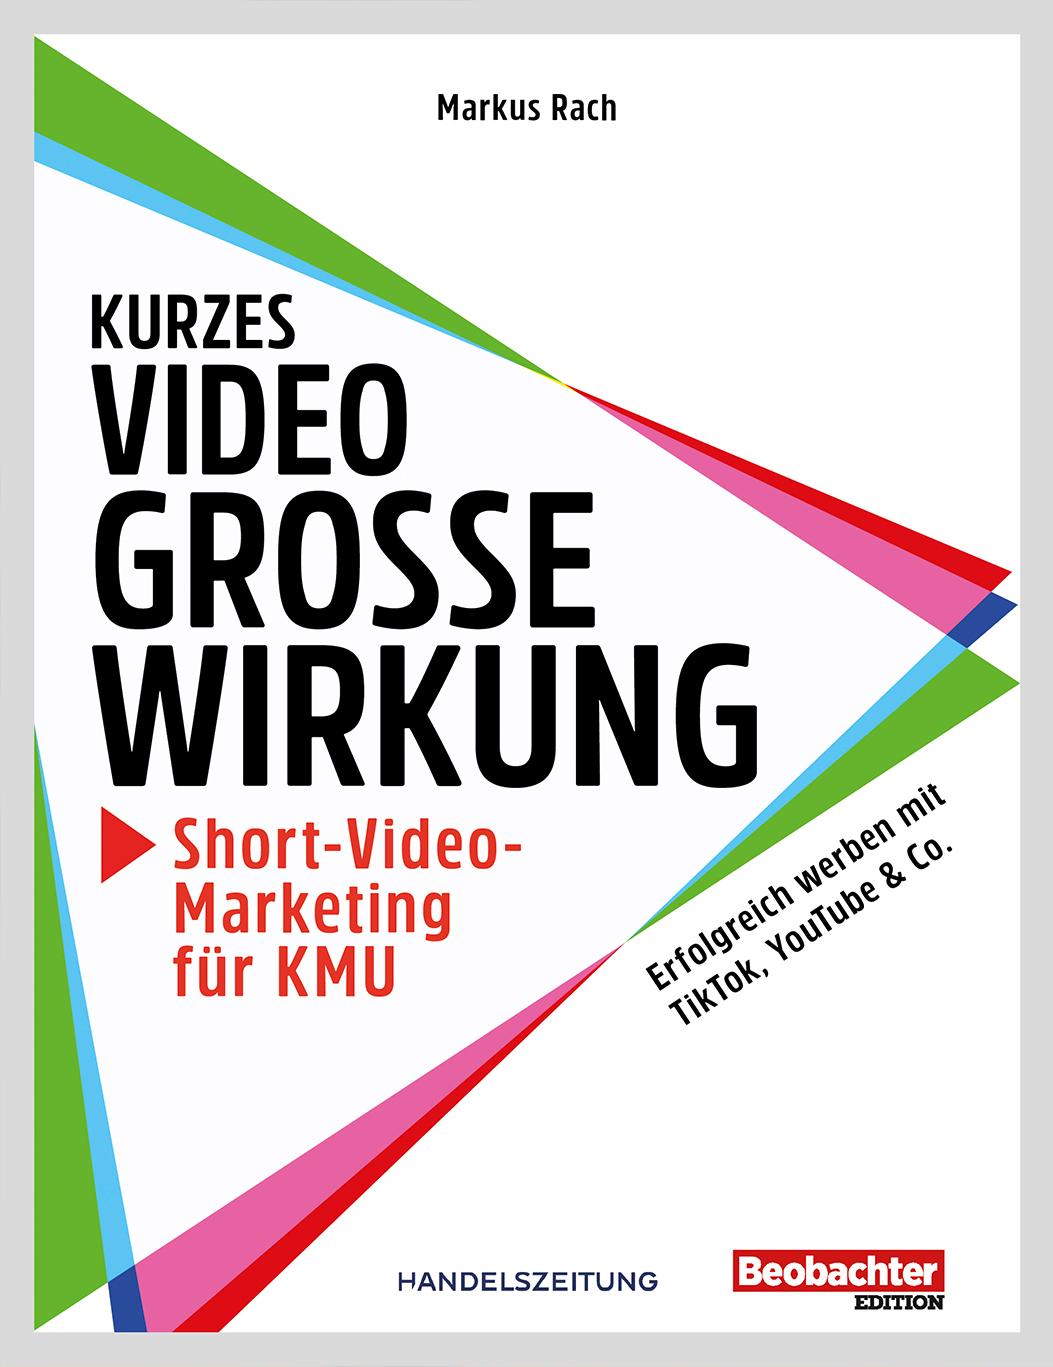 Kurzes Video, grosse Wirkung – Short-Video-Marketing für KMU